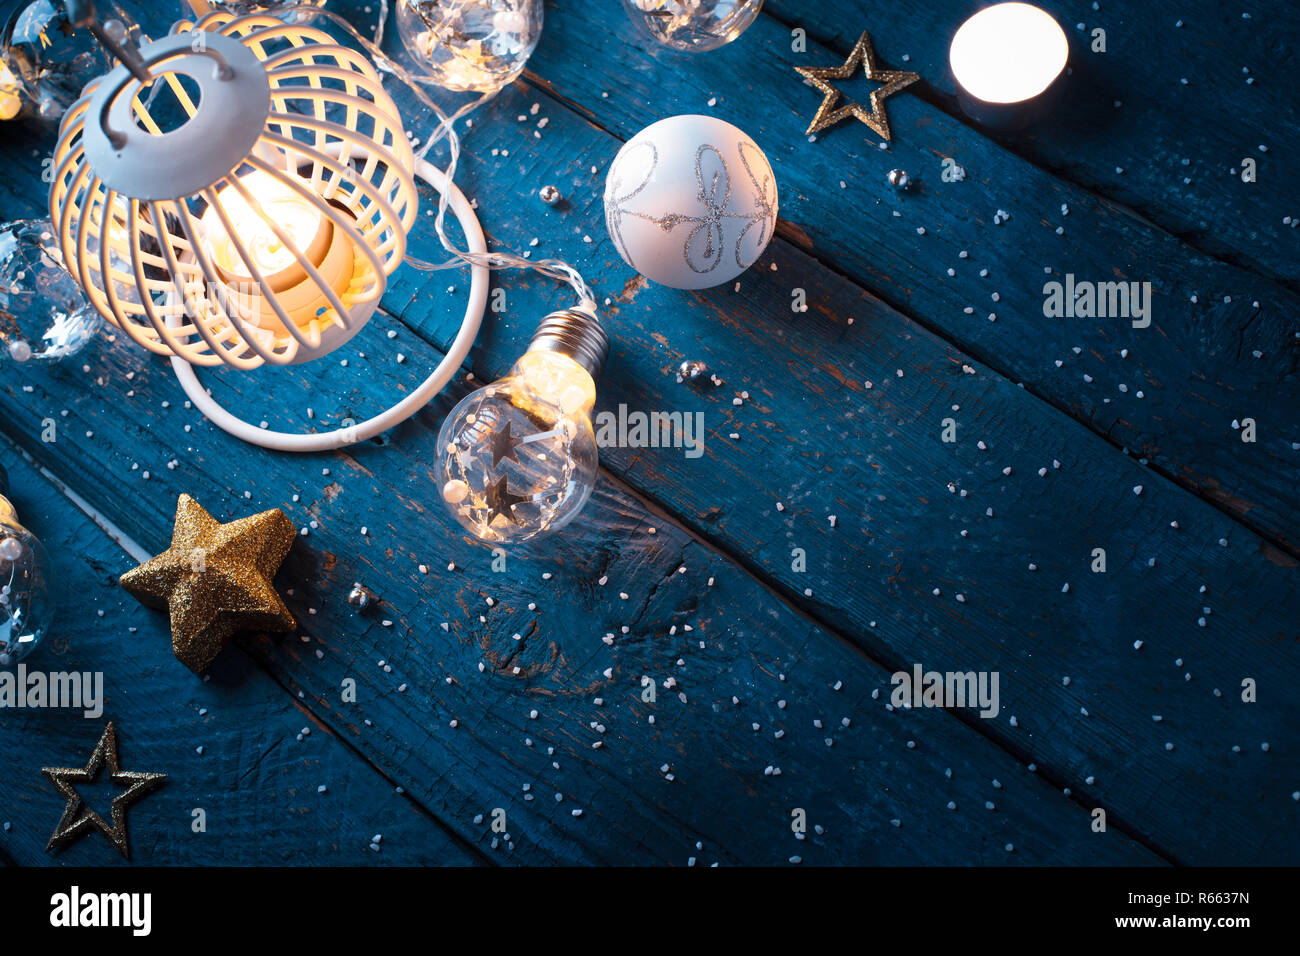 Lanterne de Noël avec des décorations sur blue background Banque D'Images